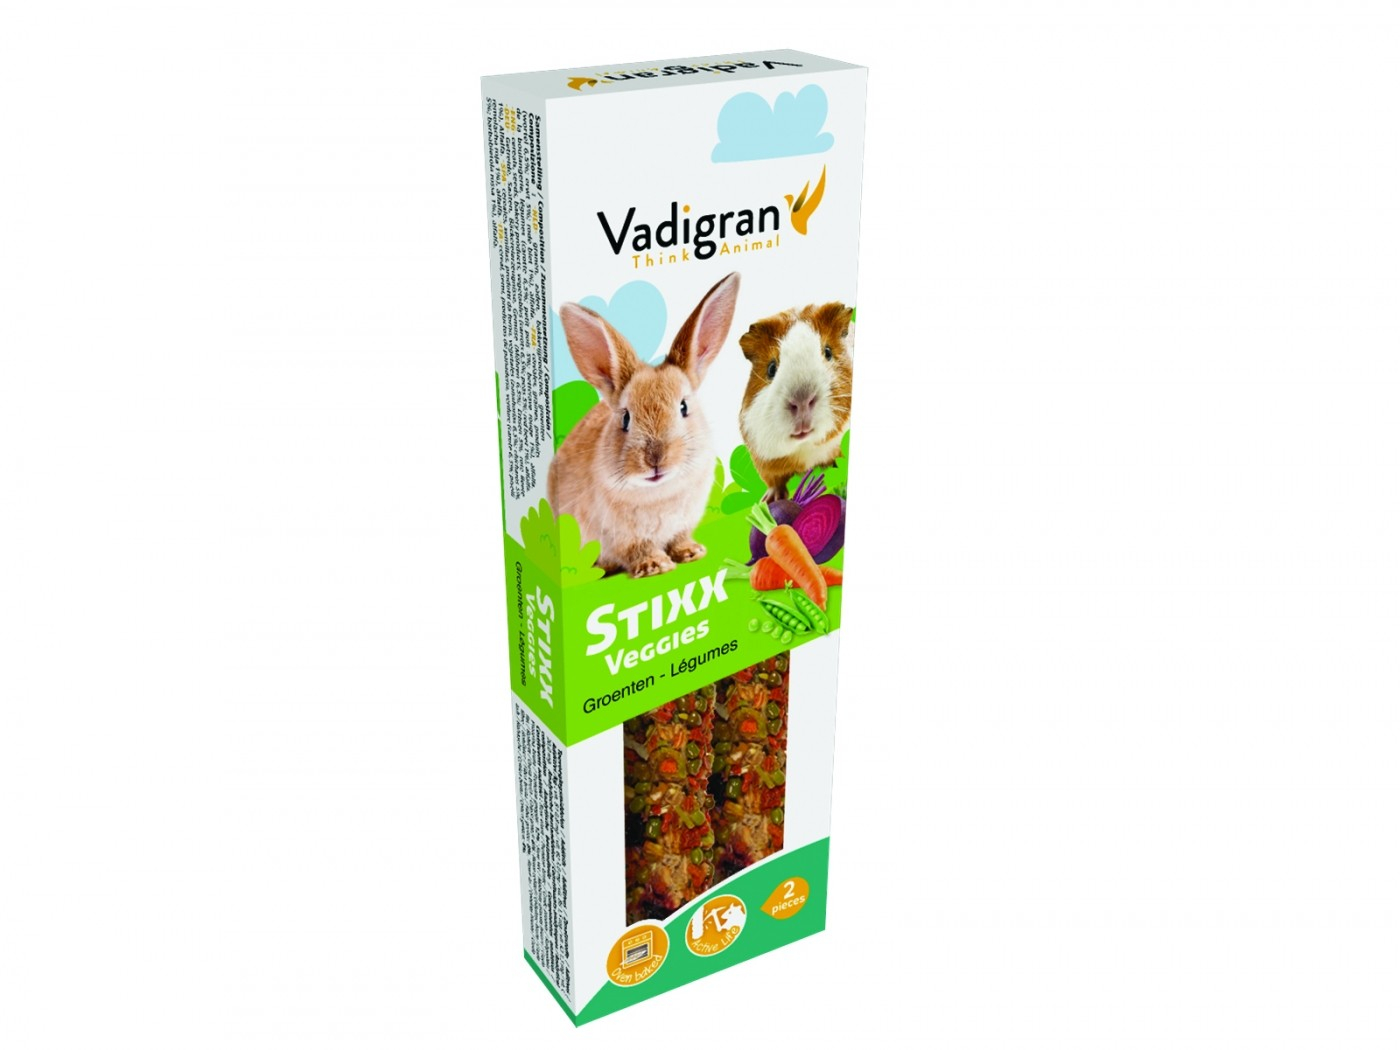 Barritas de verduras Vadigran StiXX Veggies conejos y cobayas 115g